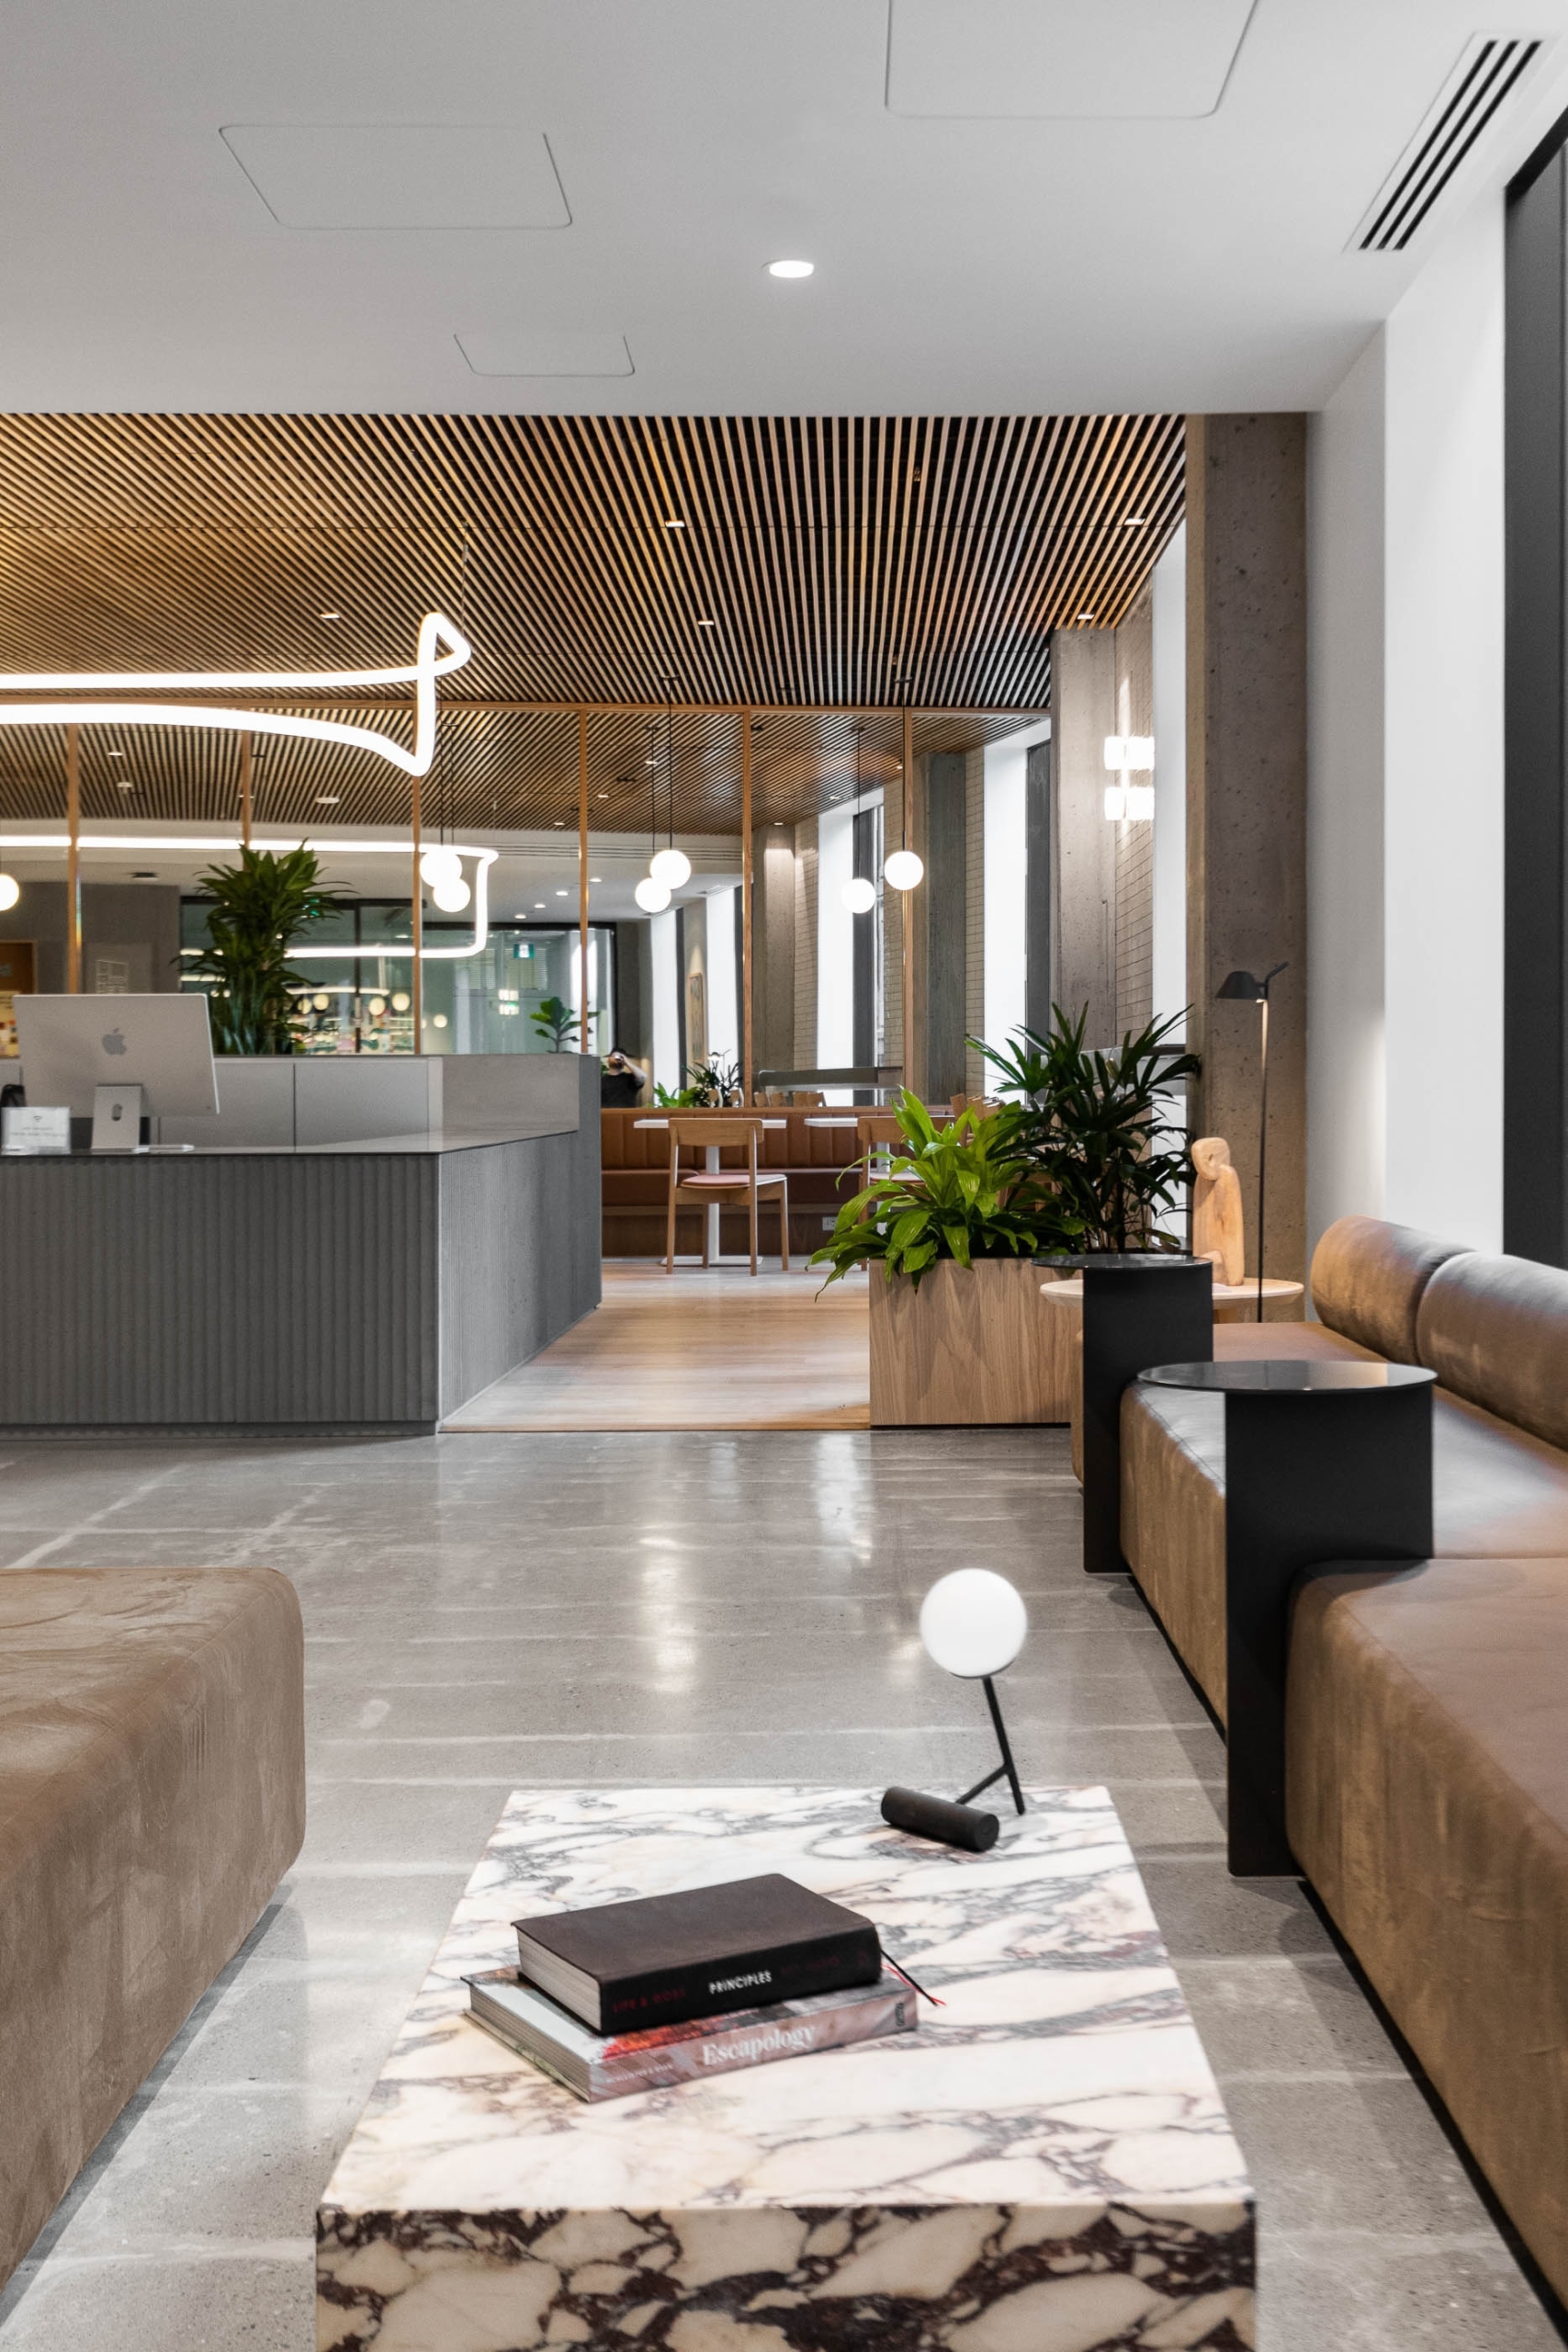 【Zendeskのオフィスデザイン】- カナダ, モントリオールのオープンスペース